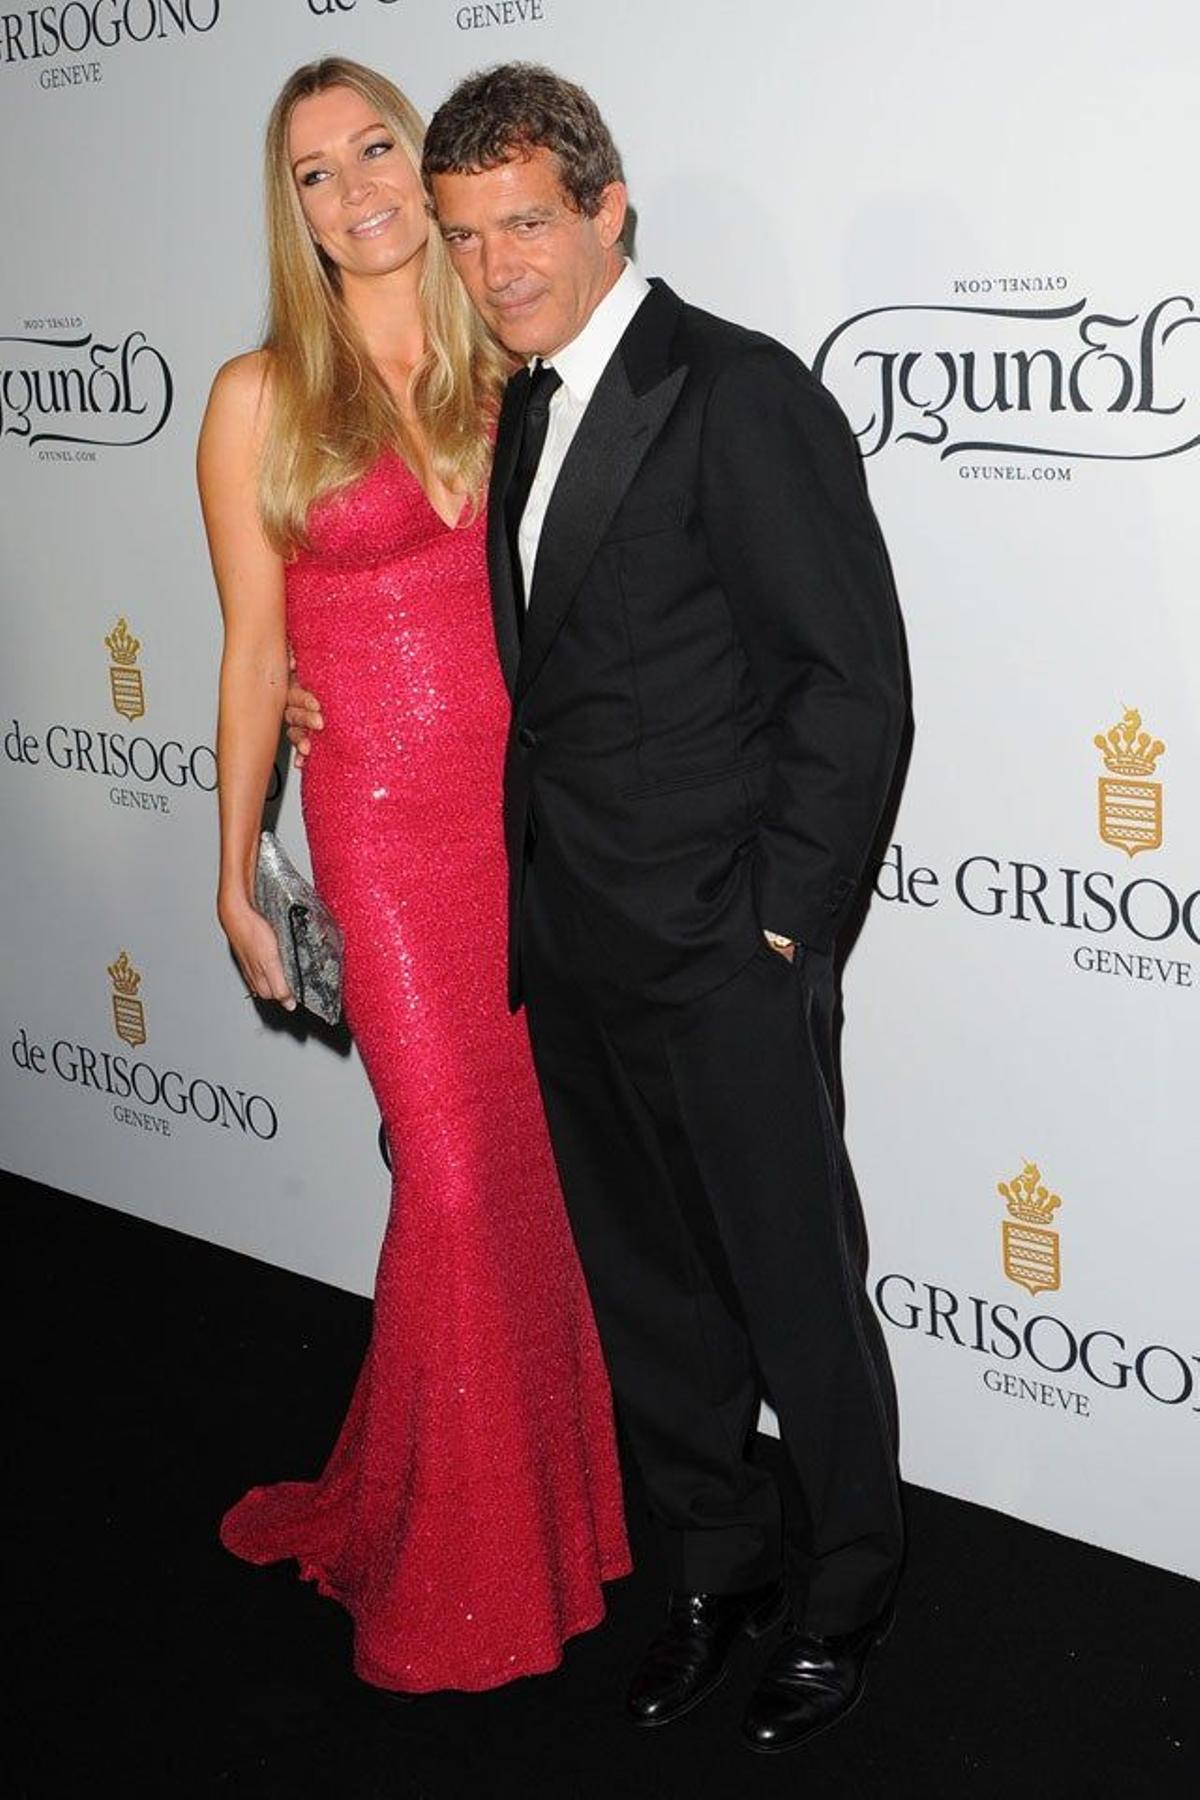 Antonio Banderas junto a su novia Nicole Kempel en la fiesta De Grisogono en Cannes